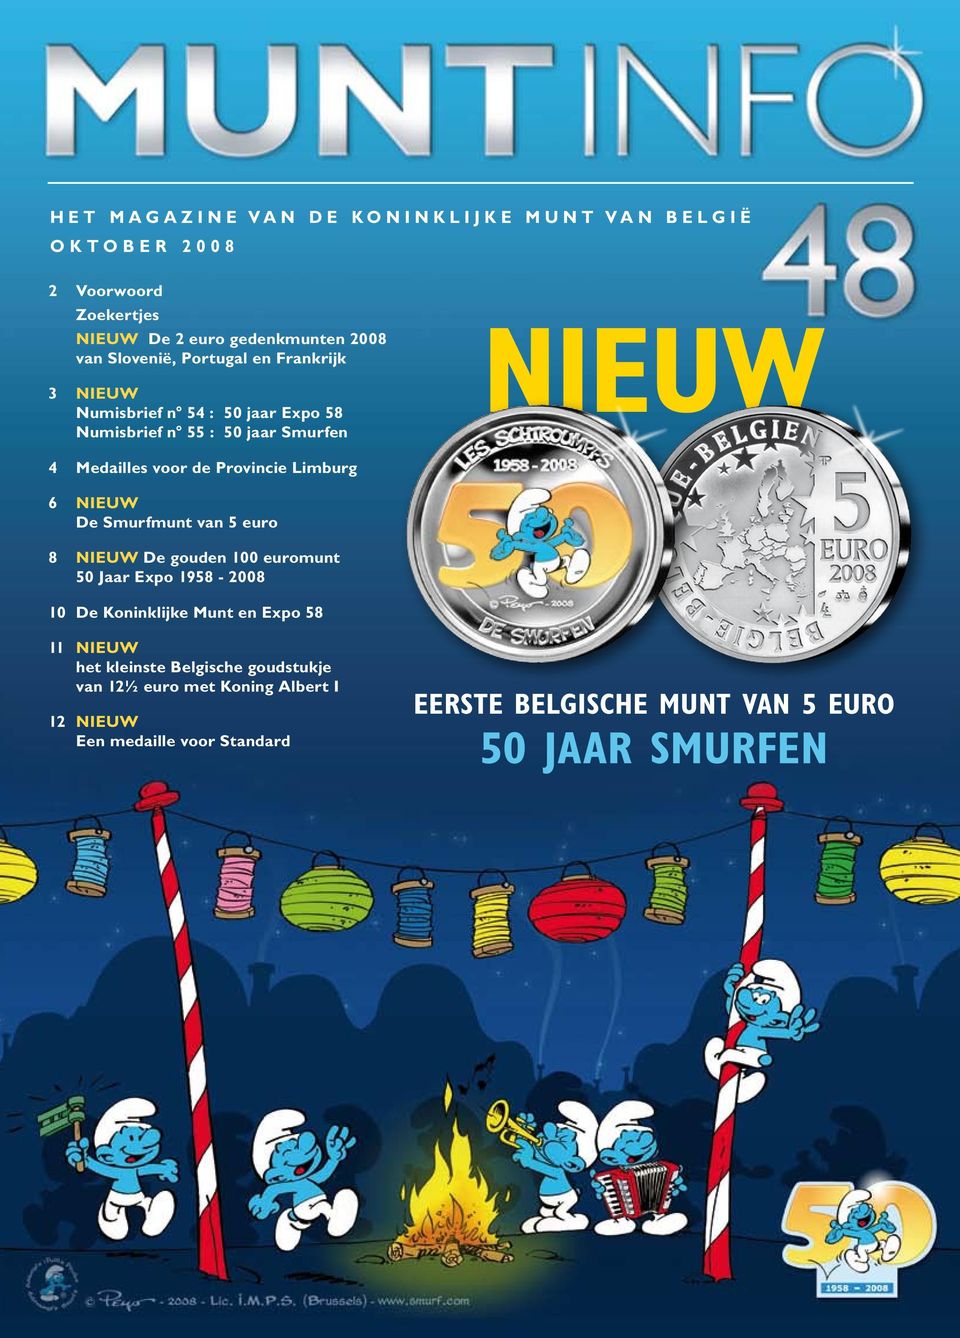 Limburg 6 NIEUW De Smurfmunt van 5 euro 8 NIEUW De gouden 100 euromunt 50 Jaar Expo 1958-2008 10 De Koninklijke Munt en Expo 58 11 NIEUW